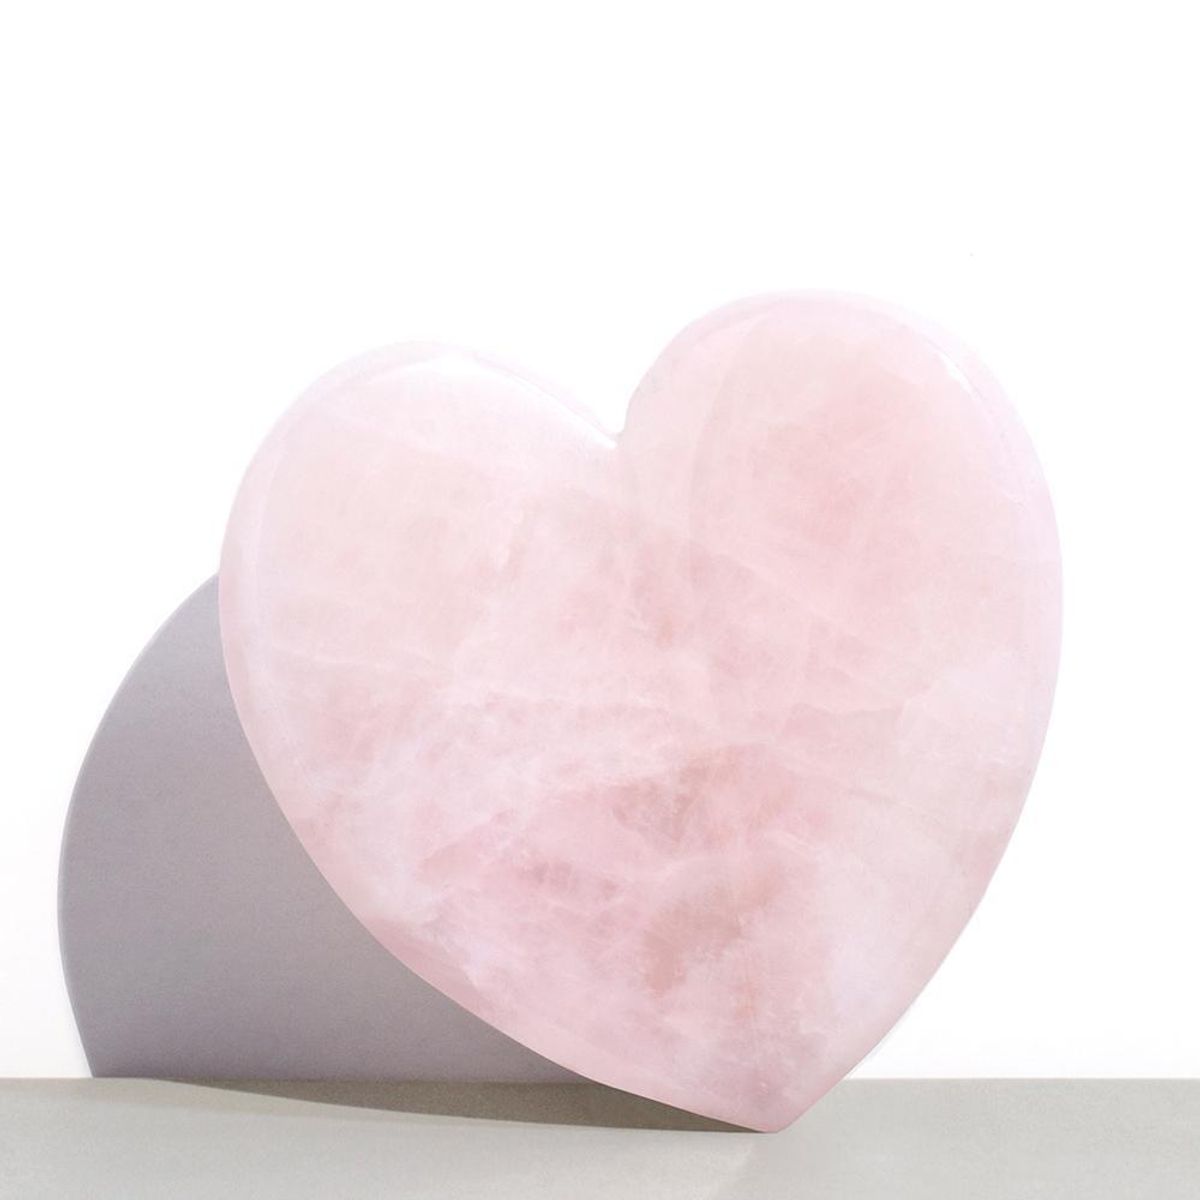 kora organics rose quartz heart facial sculptor